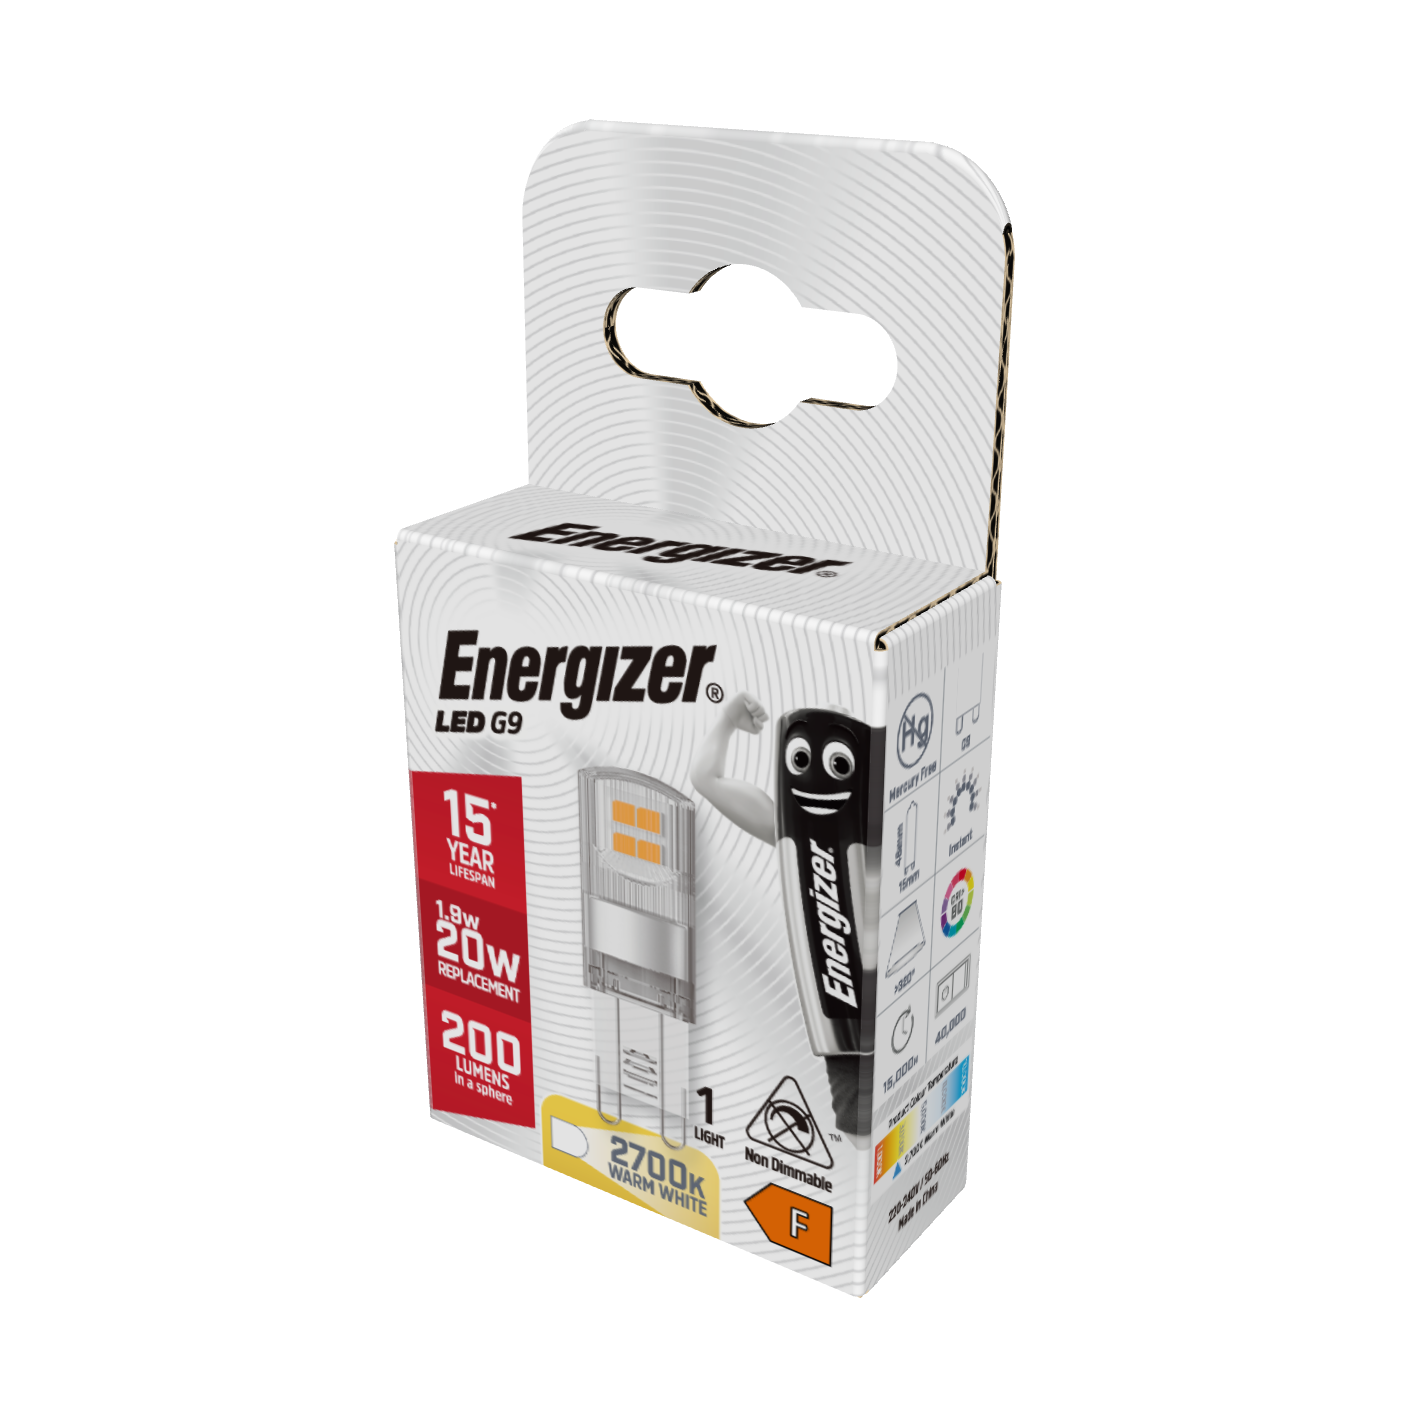 Energizer LED G9 200lm 1,9W 2.700K (Warmweiß), Packung mit 1 Stück